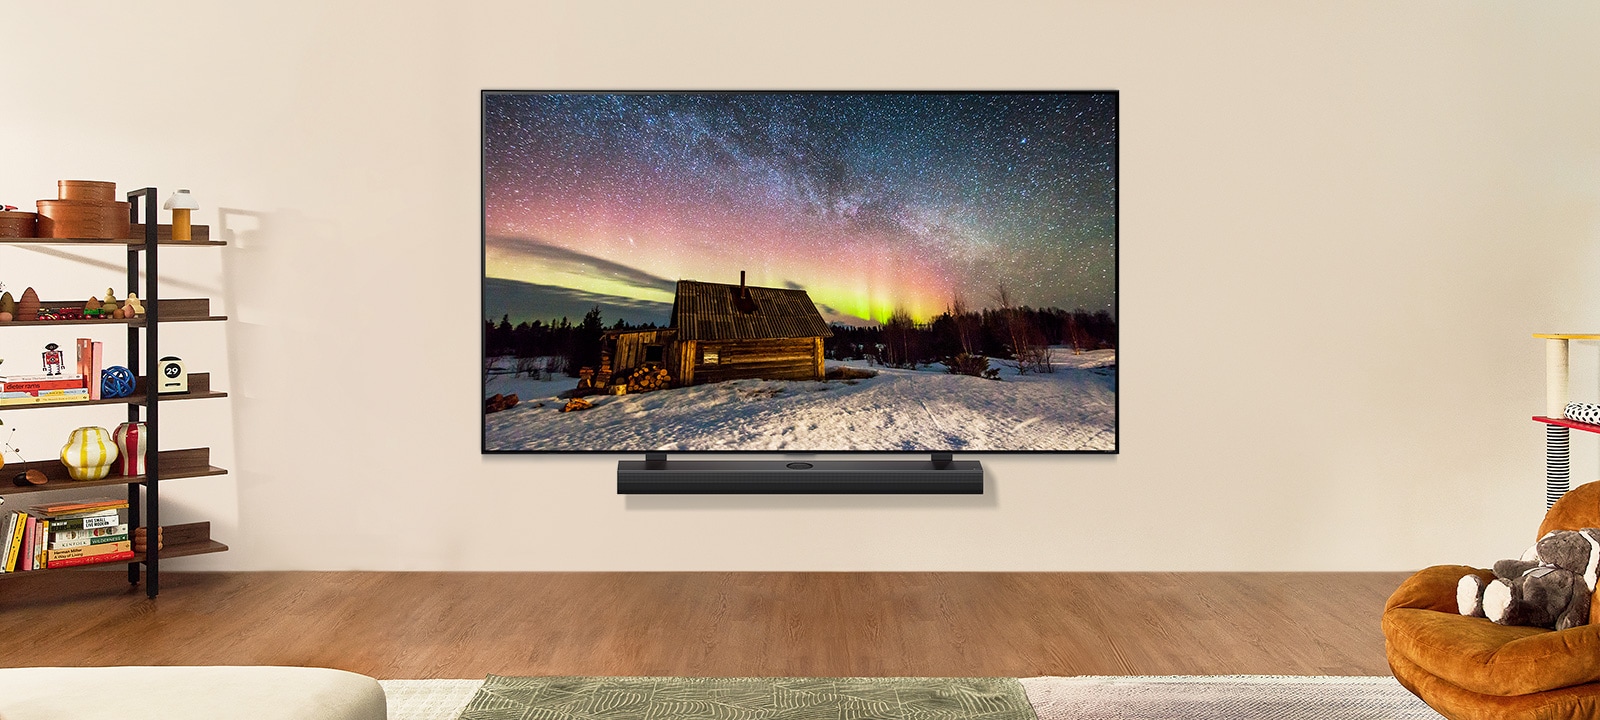 TV LG y barra de sonido LG en un moderno salón durante el día. La imagen en pantalla de la aurora boreal se muestra con los niveles de brillo ideales.